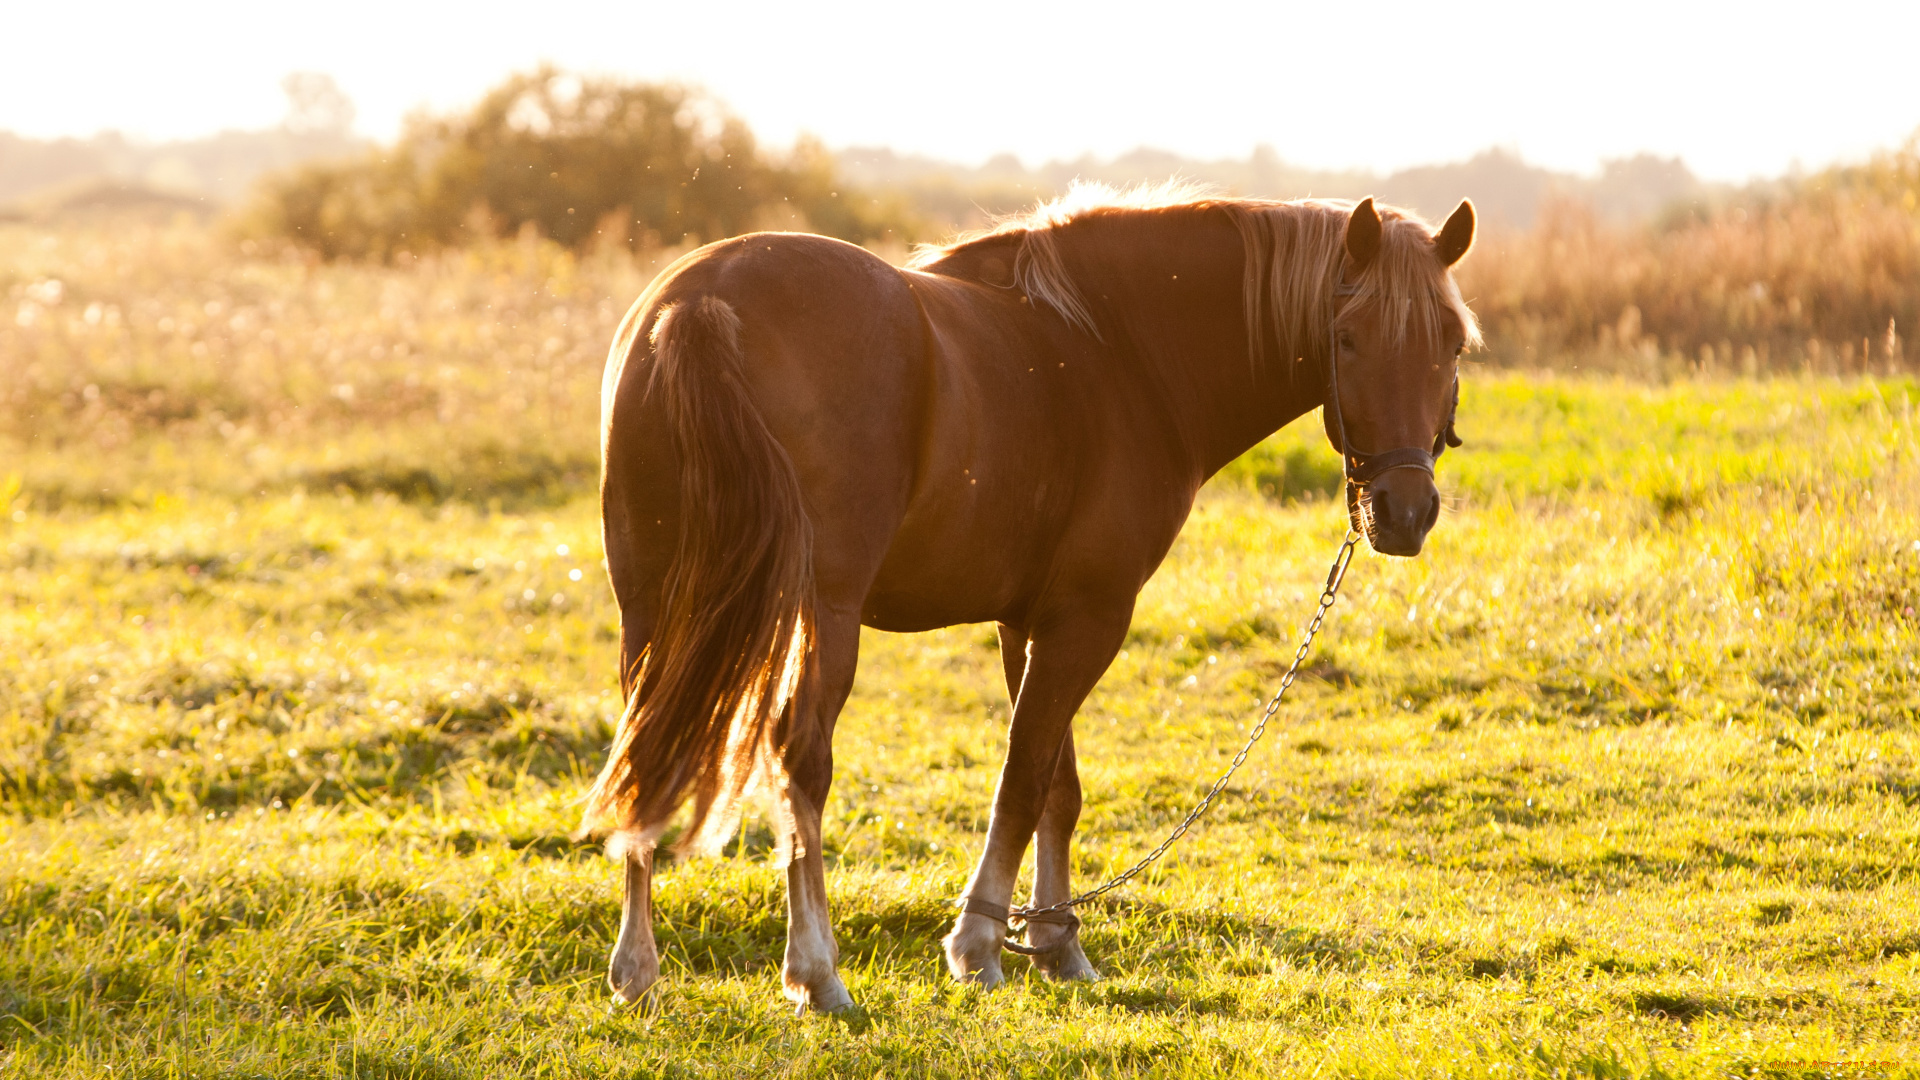 животные, лошади, лошадь, hourse, волосы, закат, солнце, лето, конь, желтый, мхи, красиво, настроение, мило, зеленый